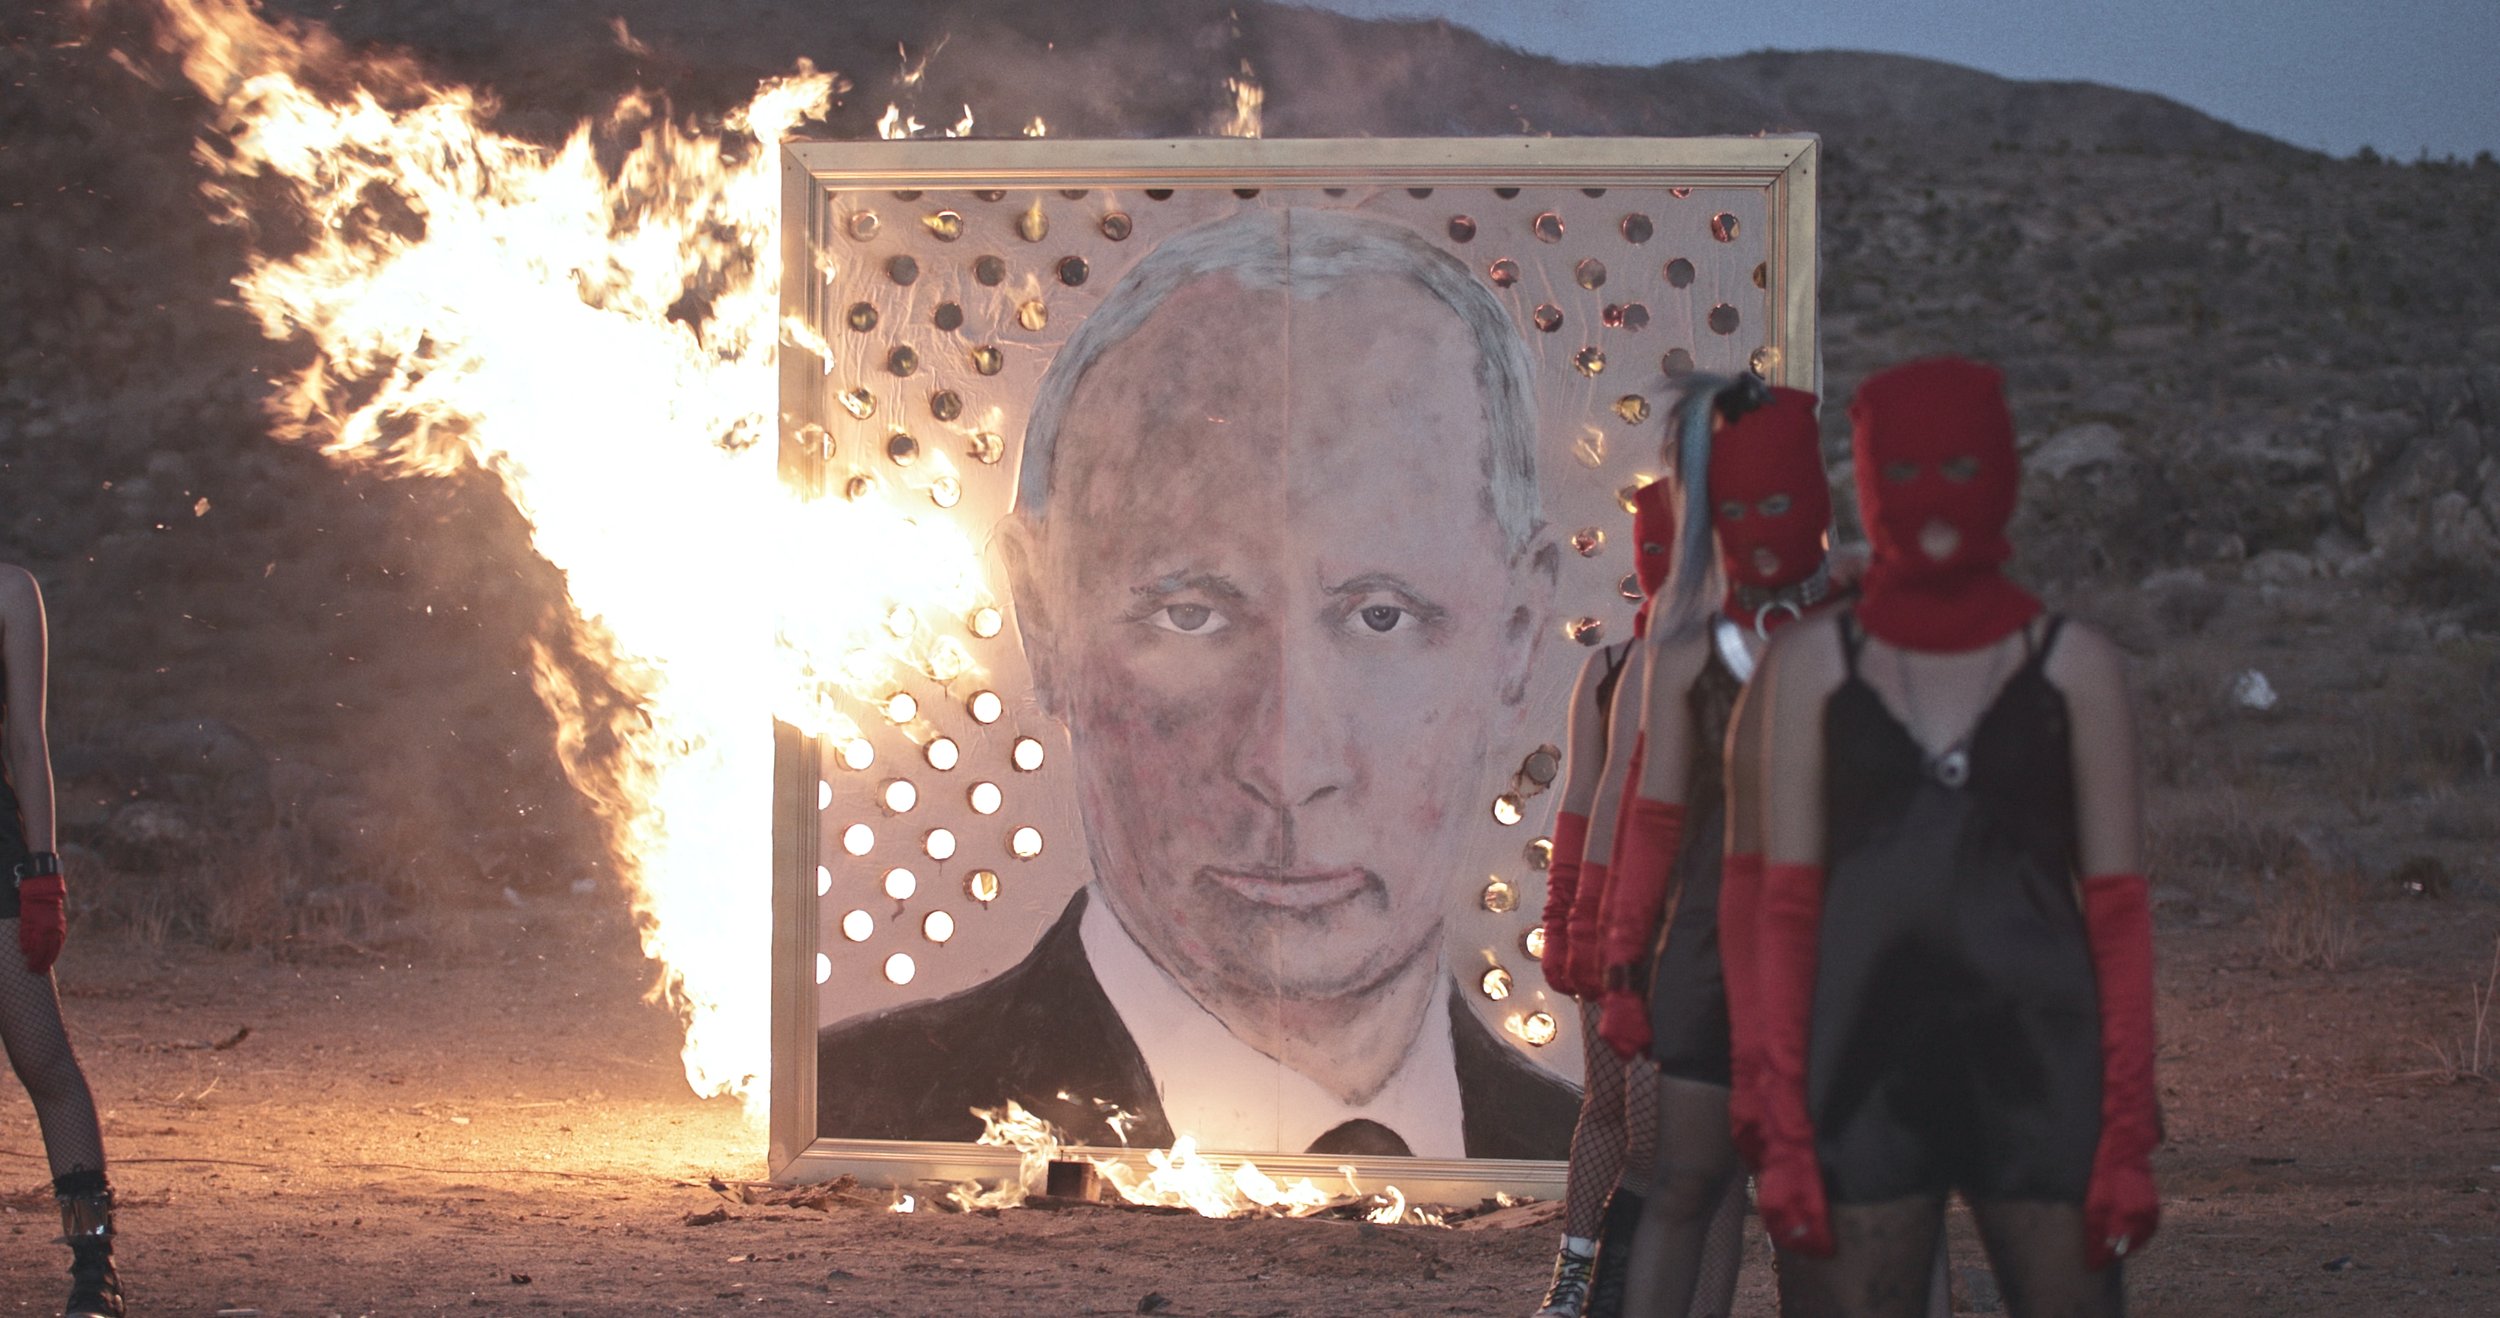 Putins Ashes General Stills_2.11.1.jpg